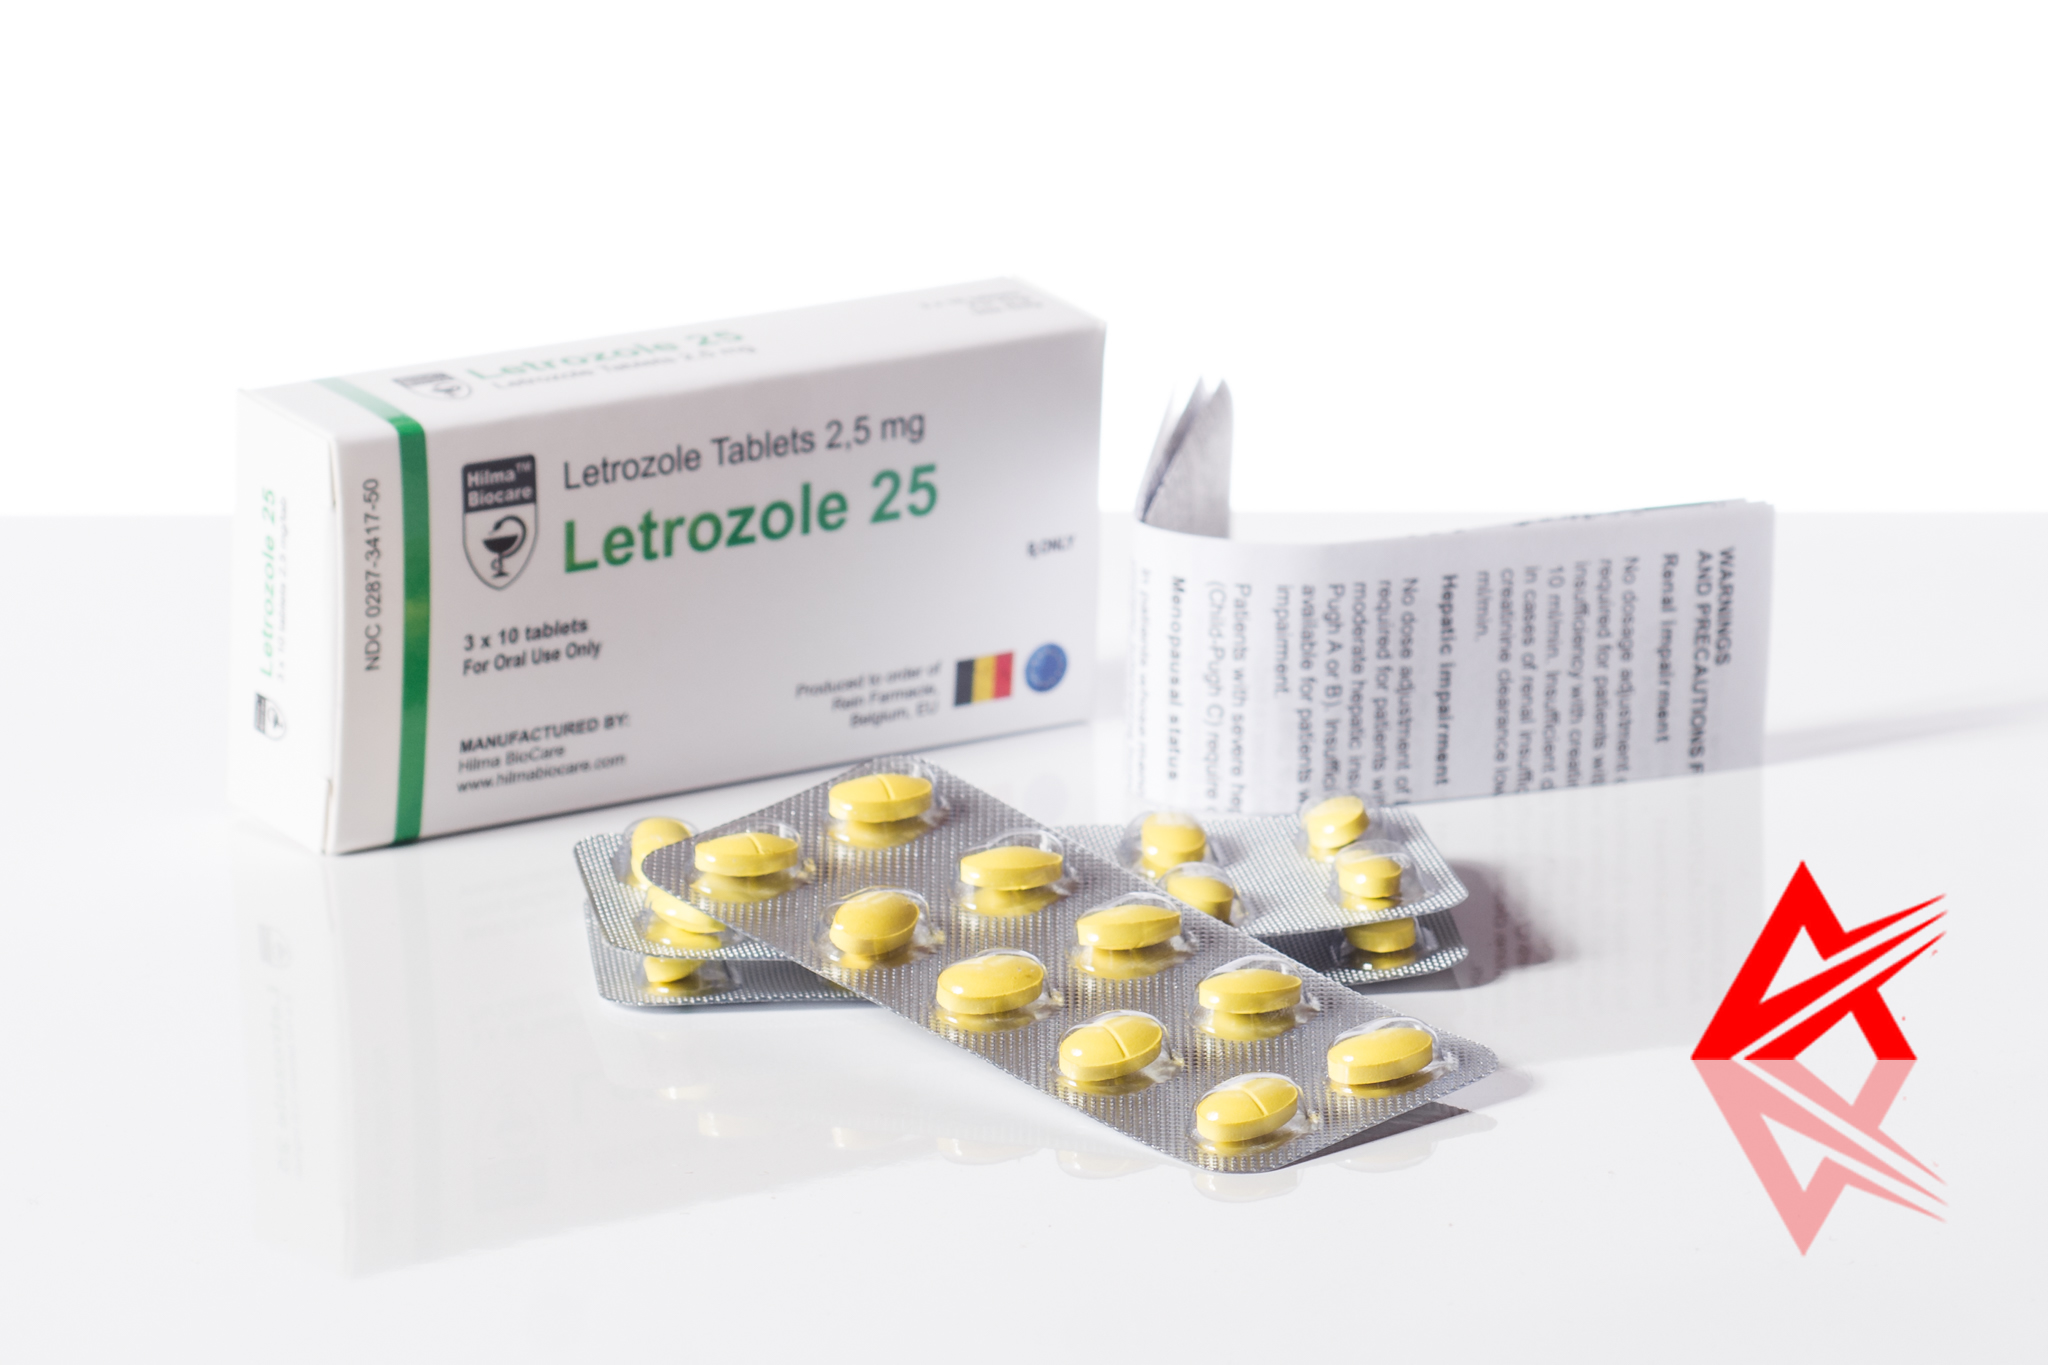 Hilma Biocare Letrozole 2.5mg – Anti-estrogen, decreases fat build-up and decreases water retention